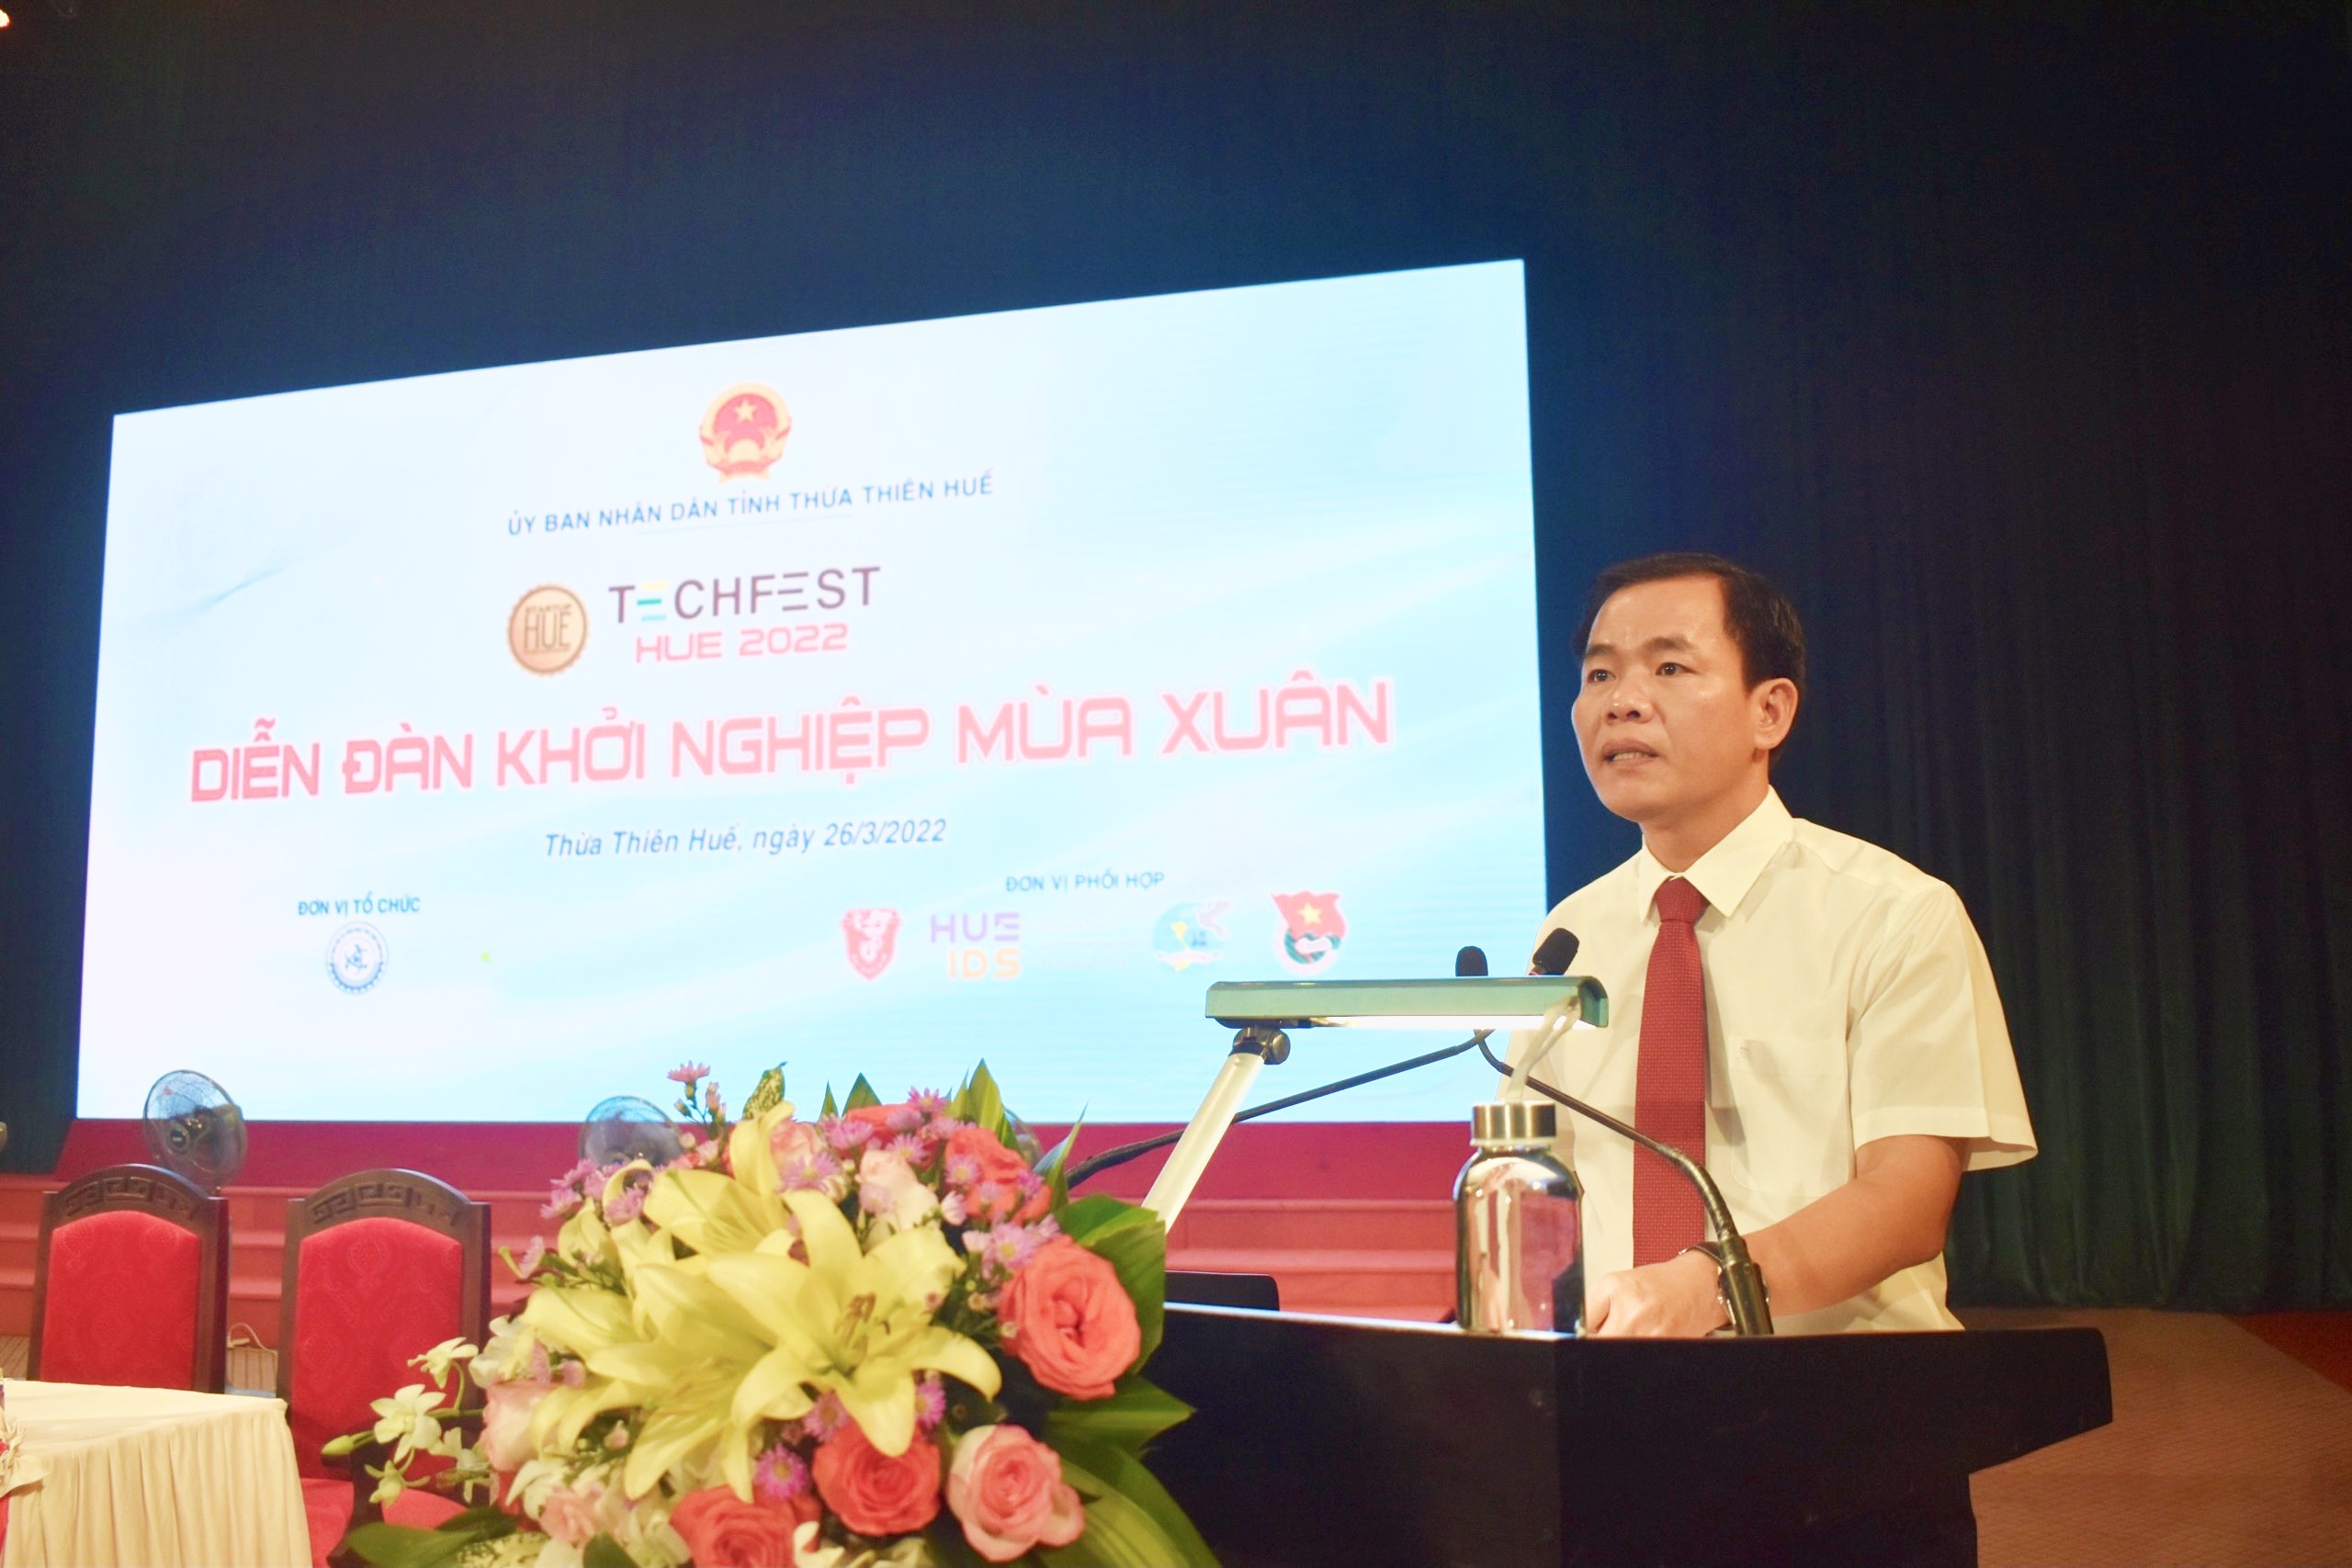 Ông Nguyễn Văn Phương - Chủ tịch UBND tỉnh TTH phát biểu tại Diễn đàn khởi nghiệp mùa xuân (Nguồn: https://skhcn.thuathienhue.gov.vn/)